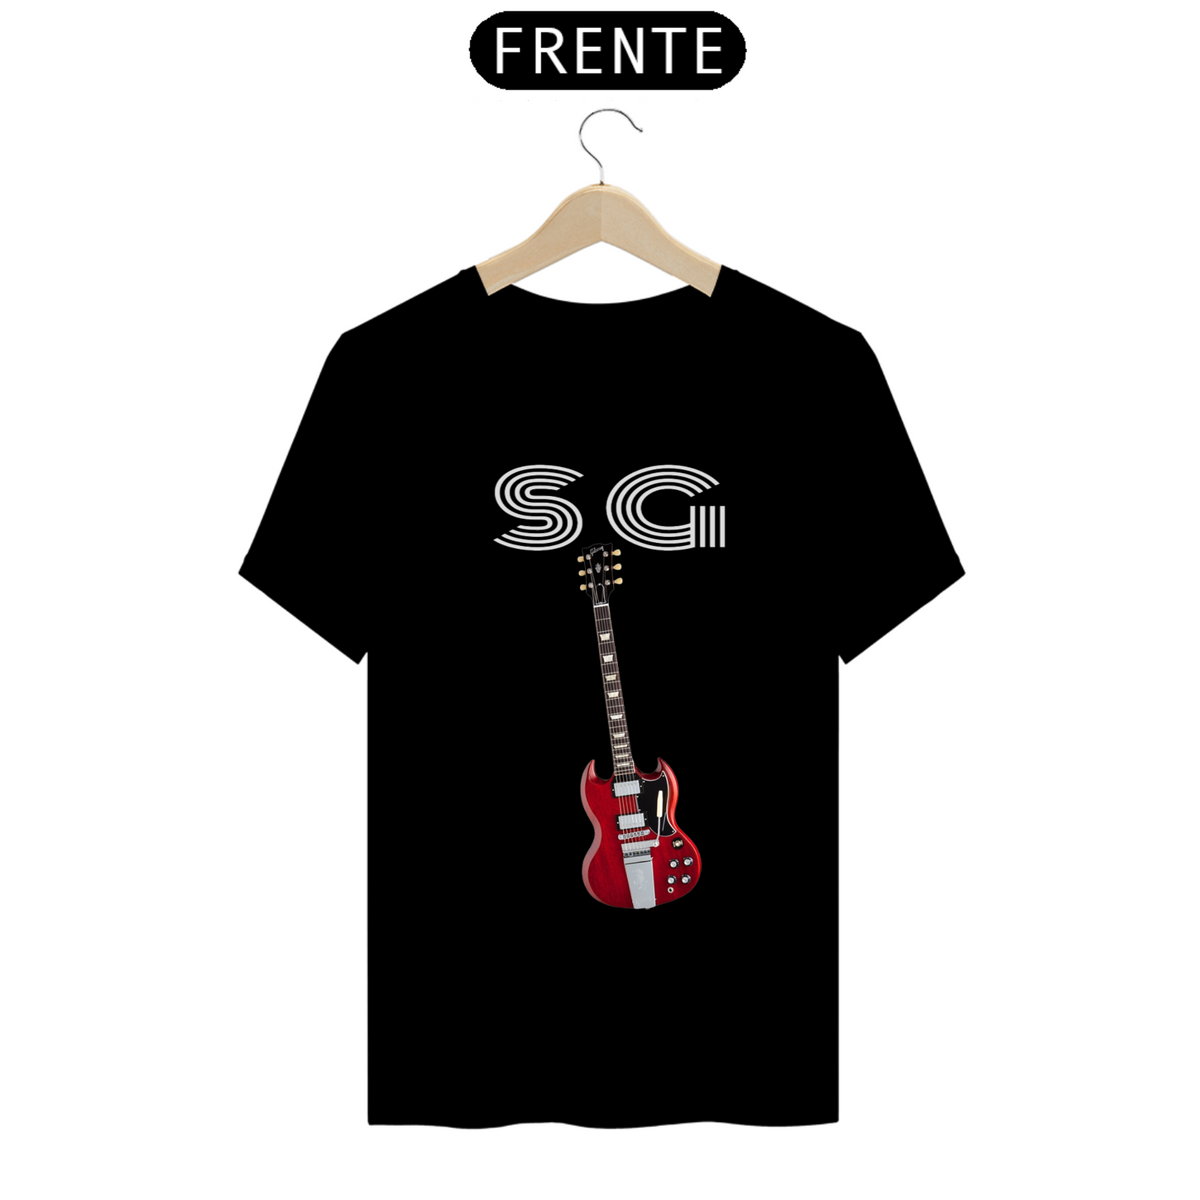 Nome do produto: Gibson SG